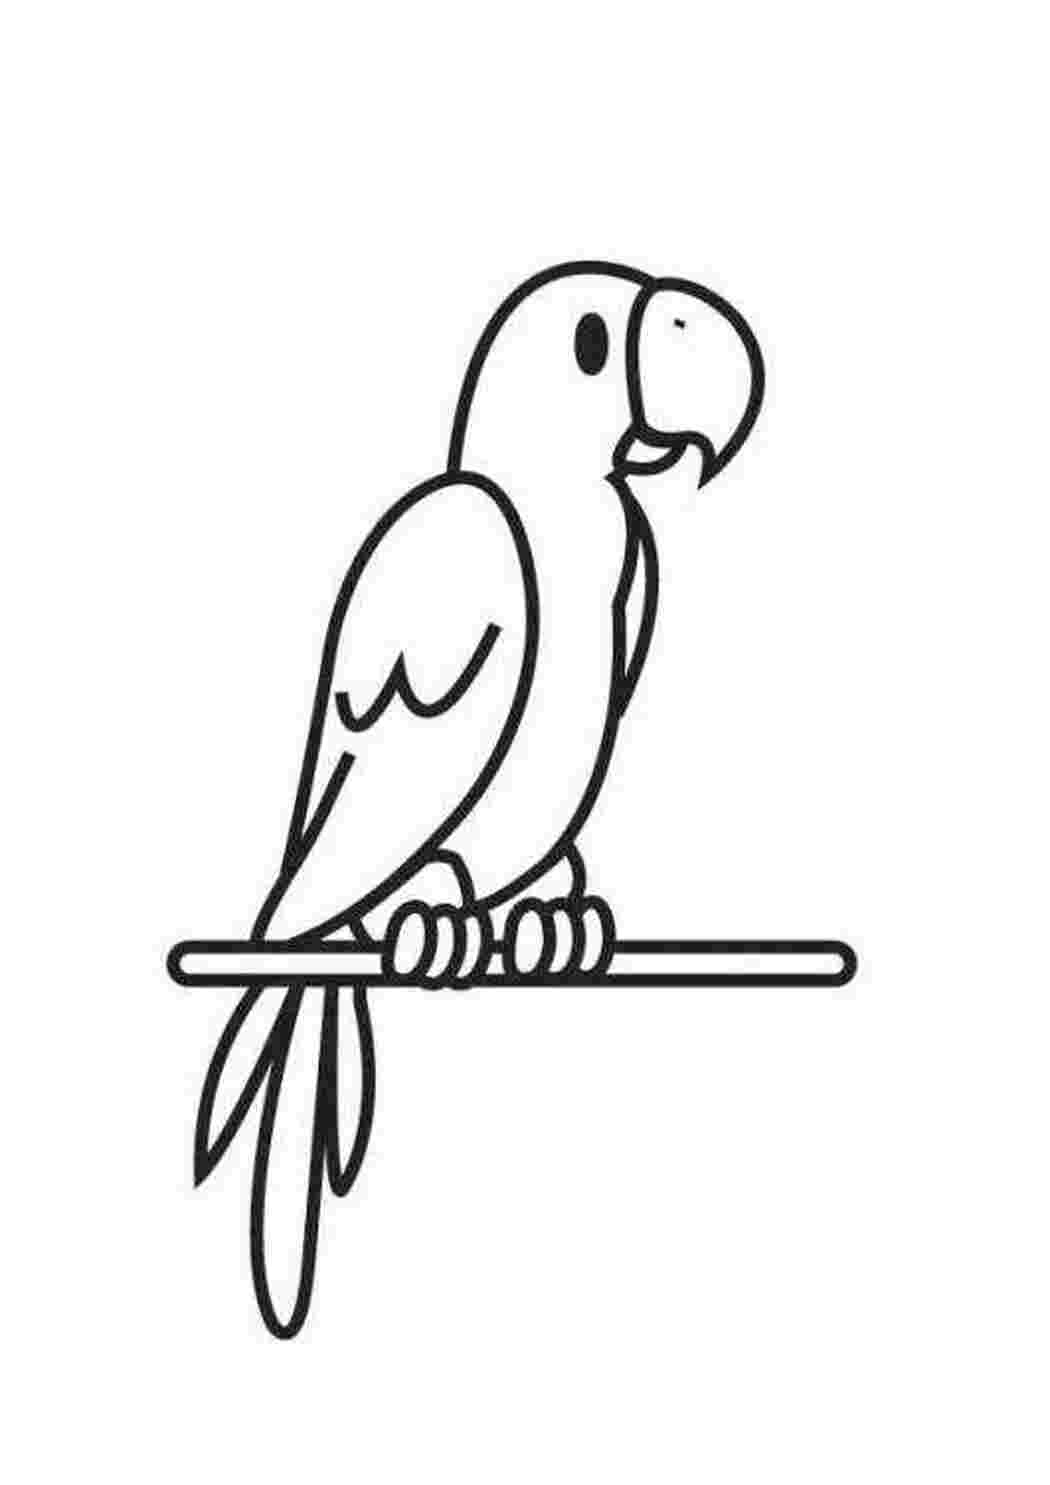 100 000 изображений по запросу Раскраска попугай доступны в рамках роялти-фри лицензии